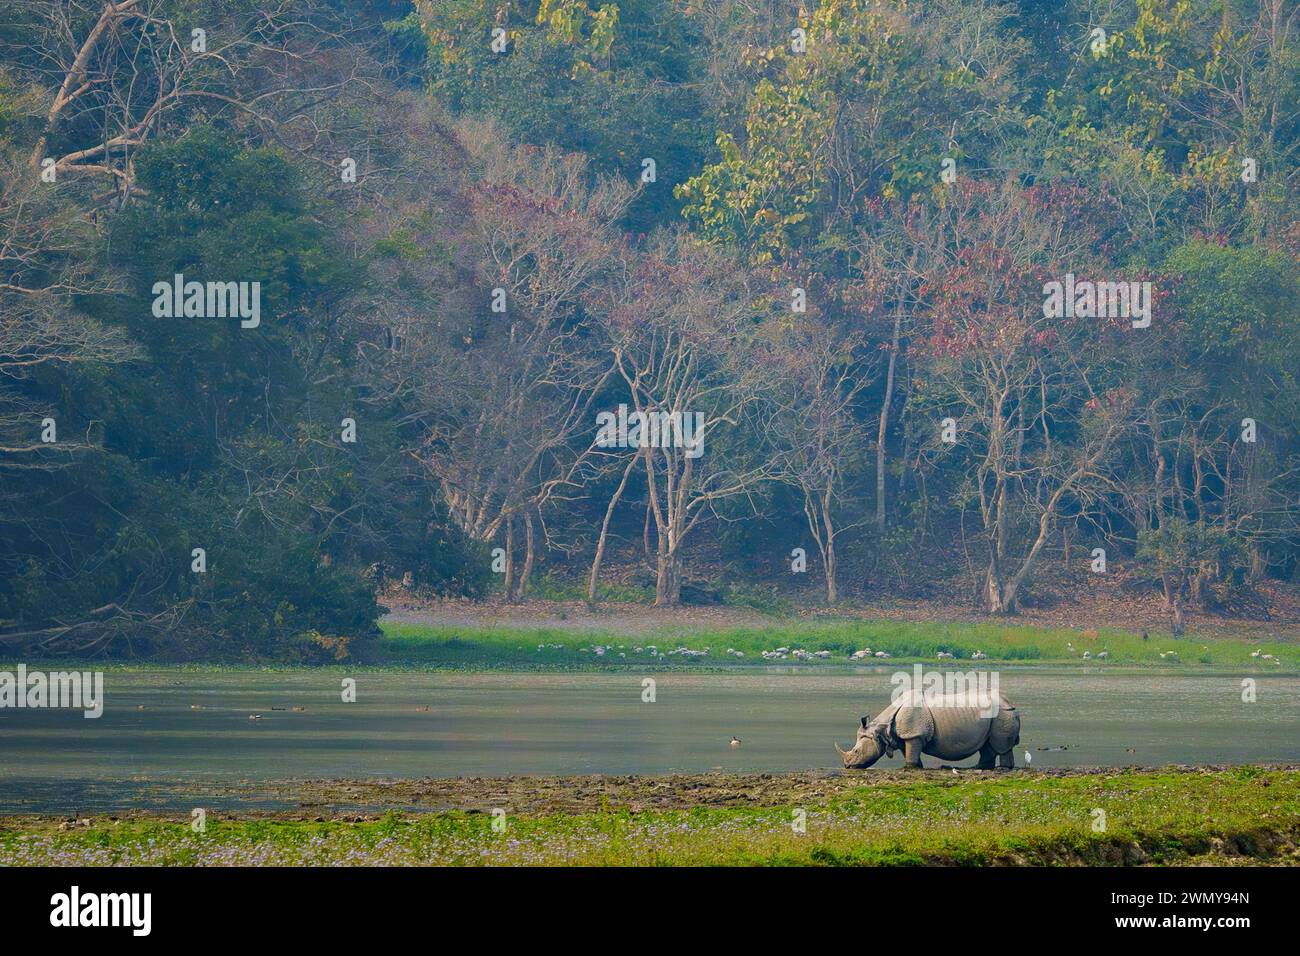 India, Uttarakhand, Jim Corbett National Park, rinoceronti asiatici o rinoceronti indiani o rinoceronti più grandi (Rhinoceros unicornis), popolazione stimata a 2.300 esemplari, due terzi dei quali si trovano nel parco nazionale di Kaziranga Foto Stock